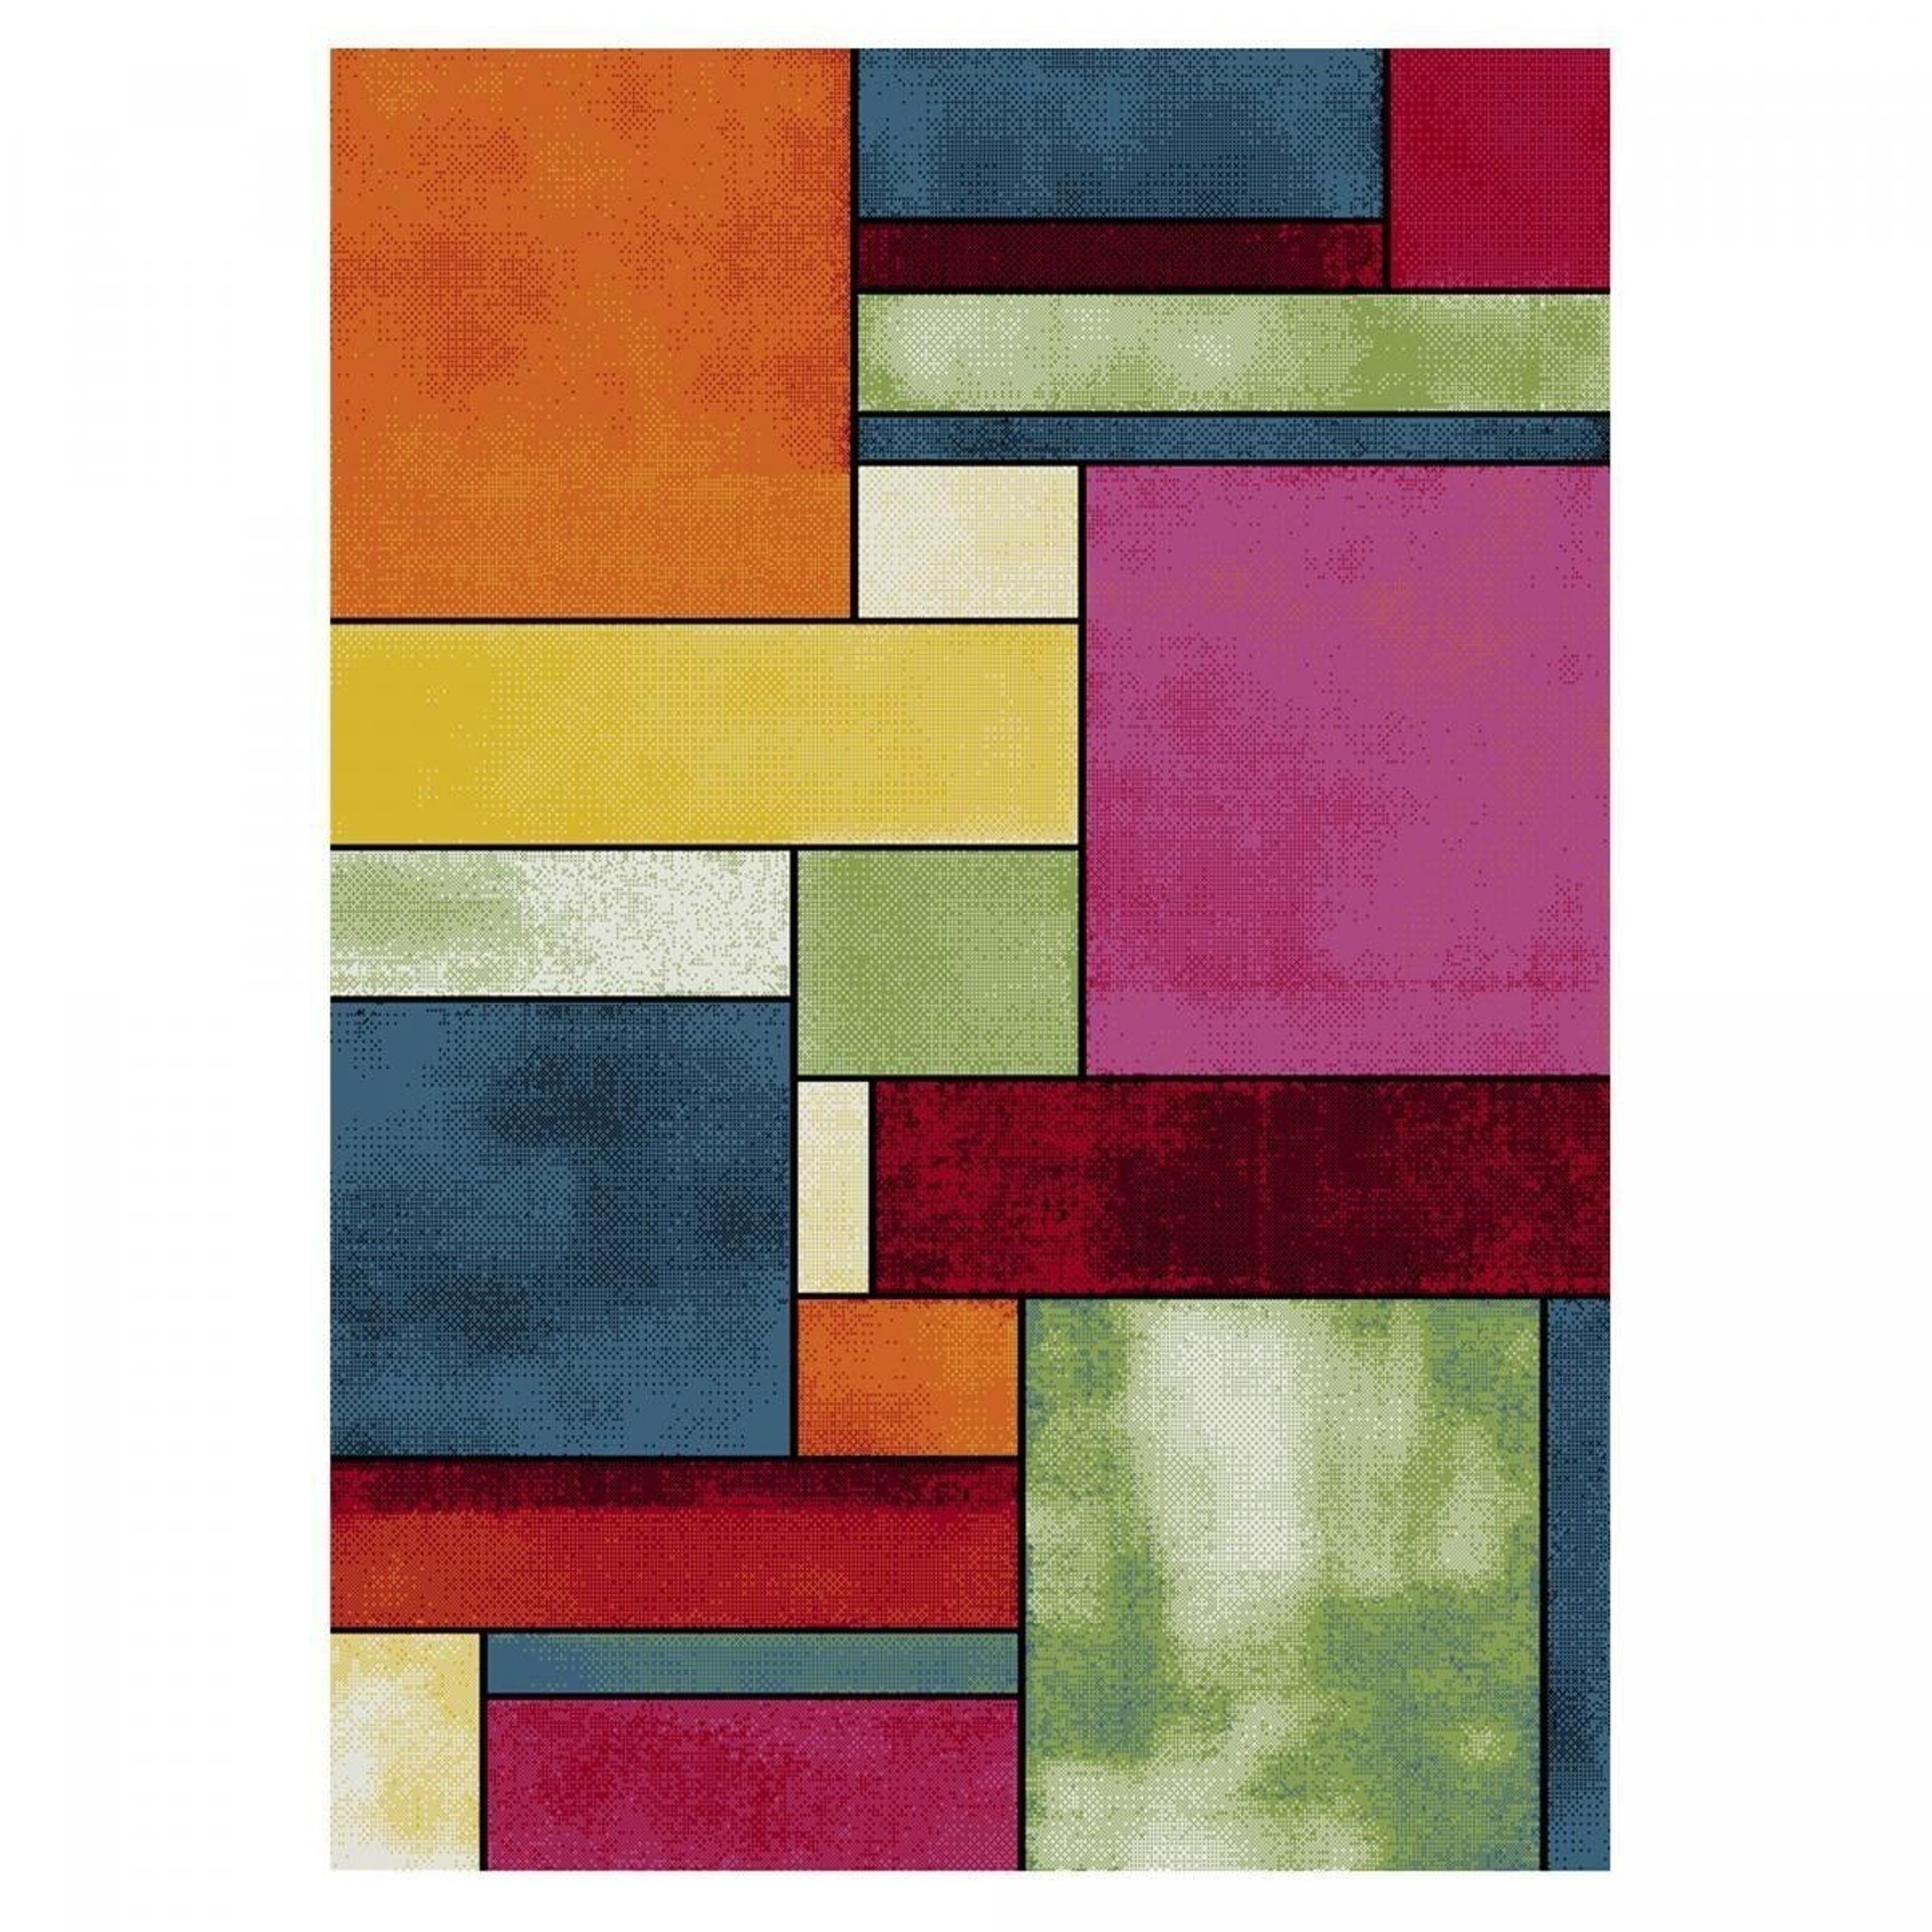 Grand tapis rond design multicolore